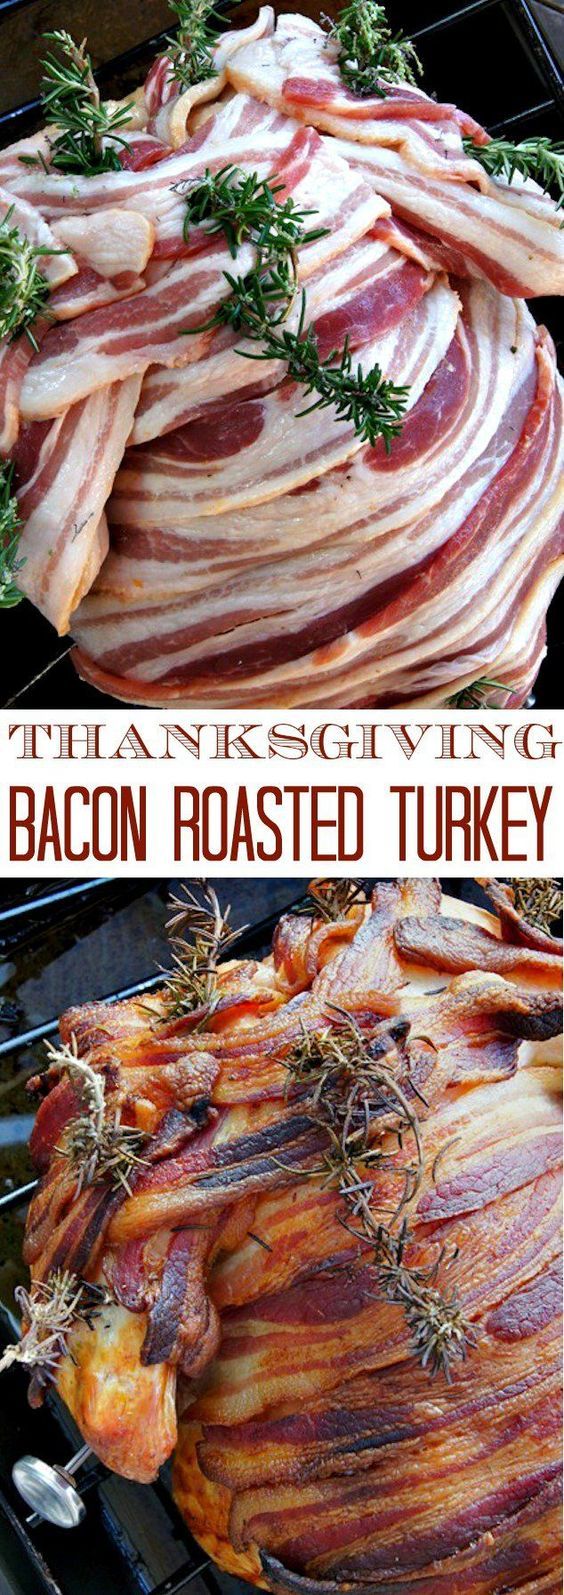 Thanksgiving turkey recipes: Smoky Paprika-Bacon Roasted Turkey